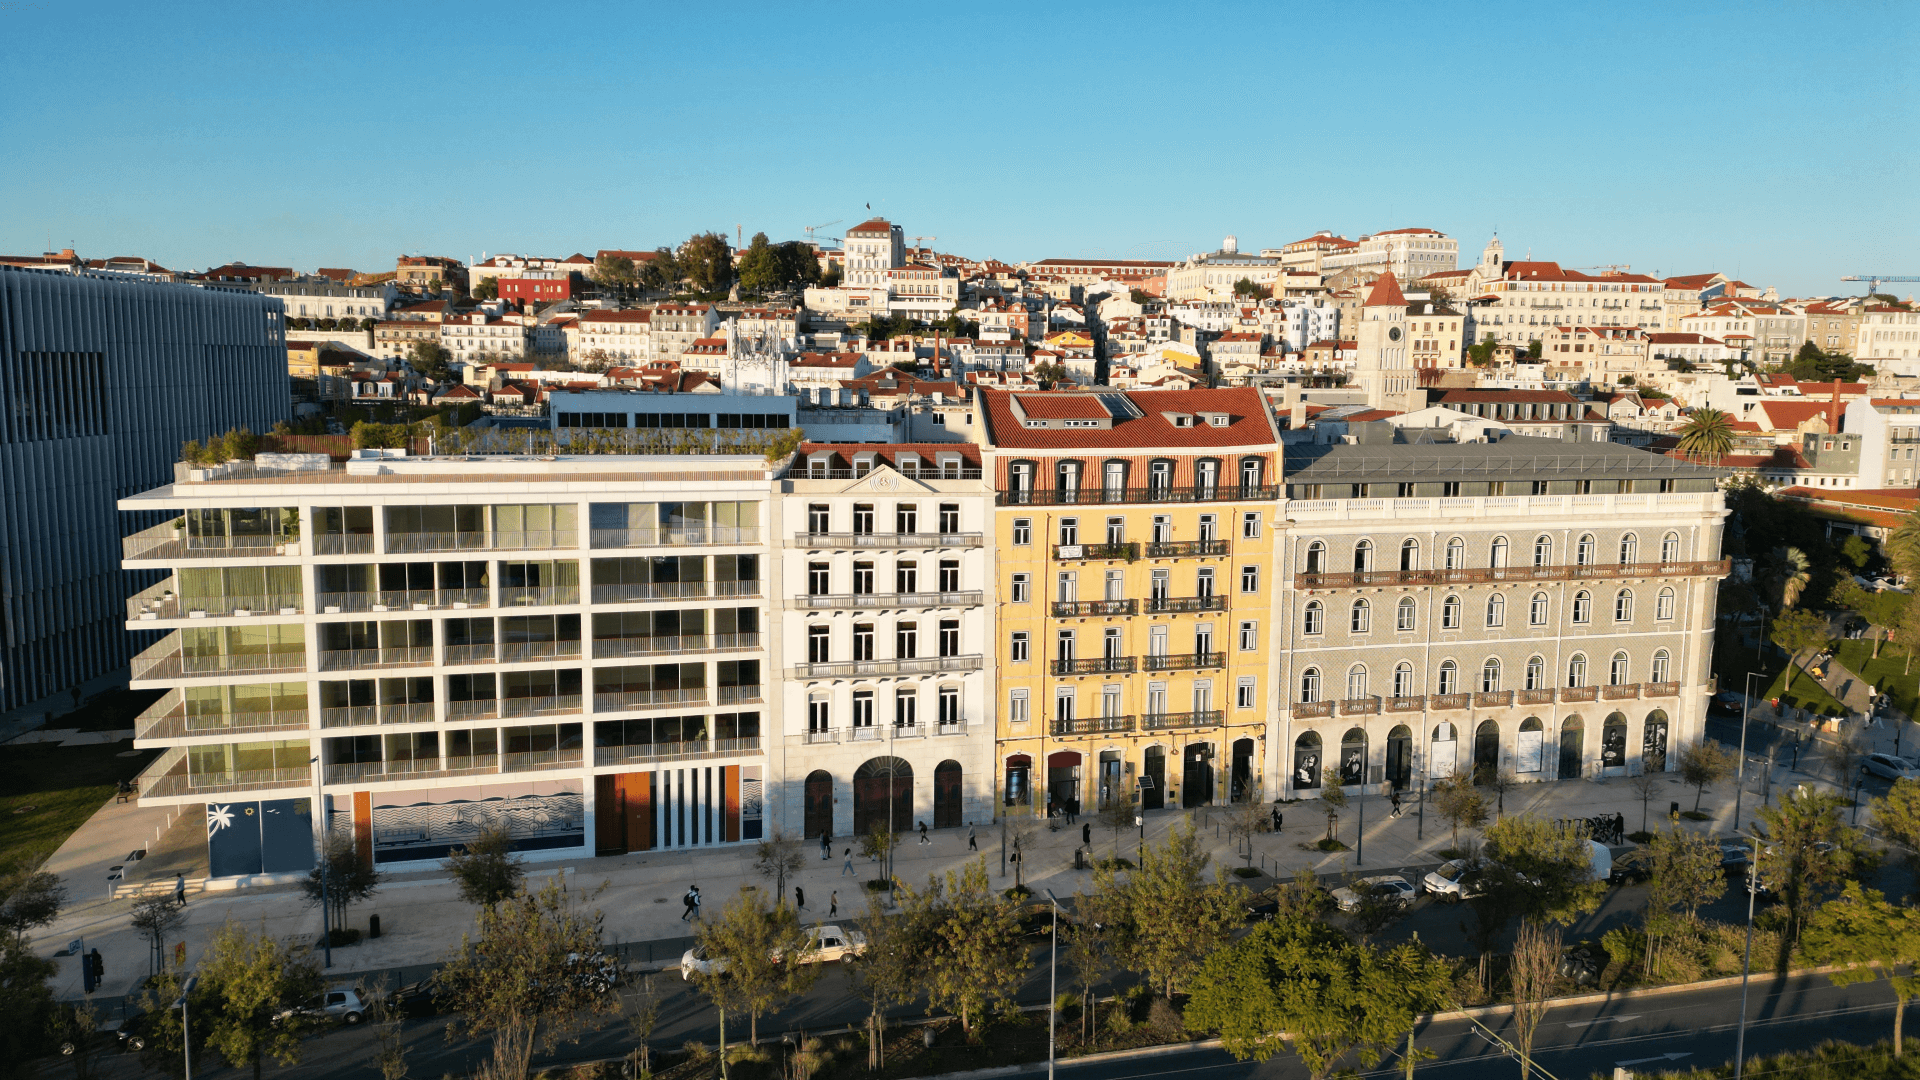 Portugal Golden Visa - Building Concept Image 1 Large